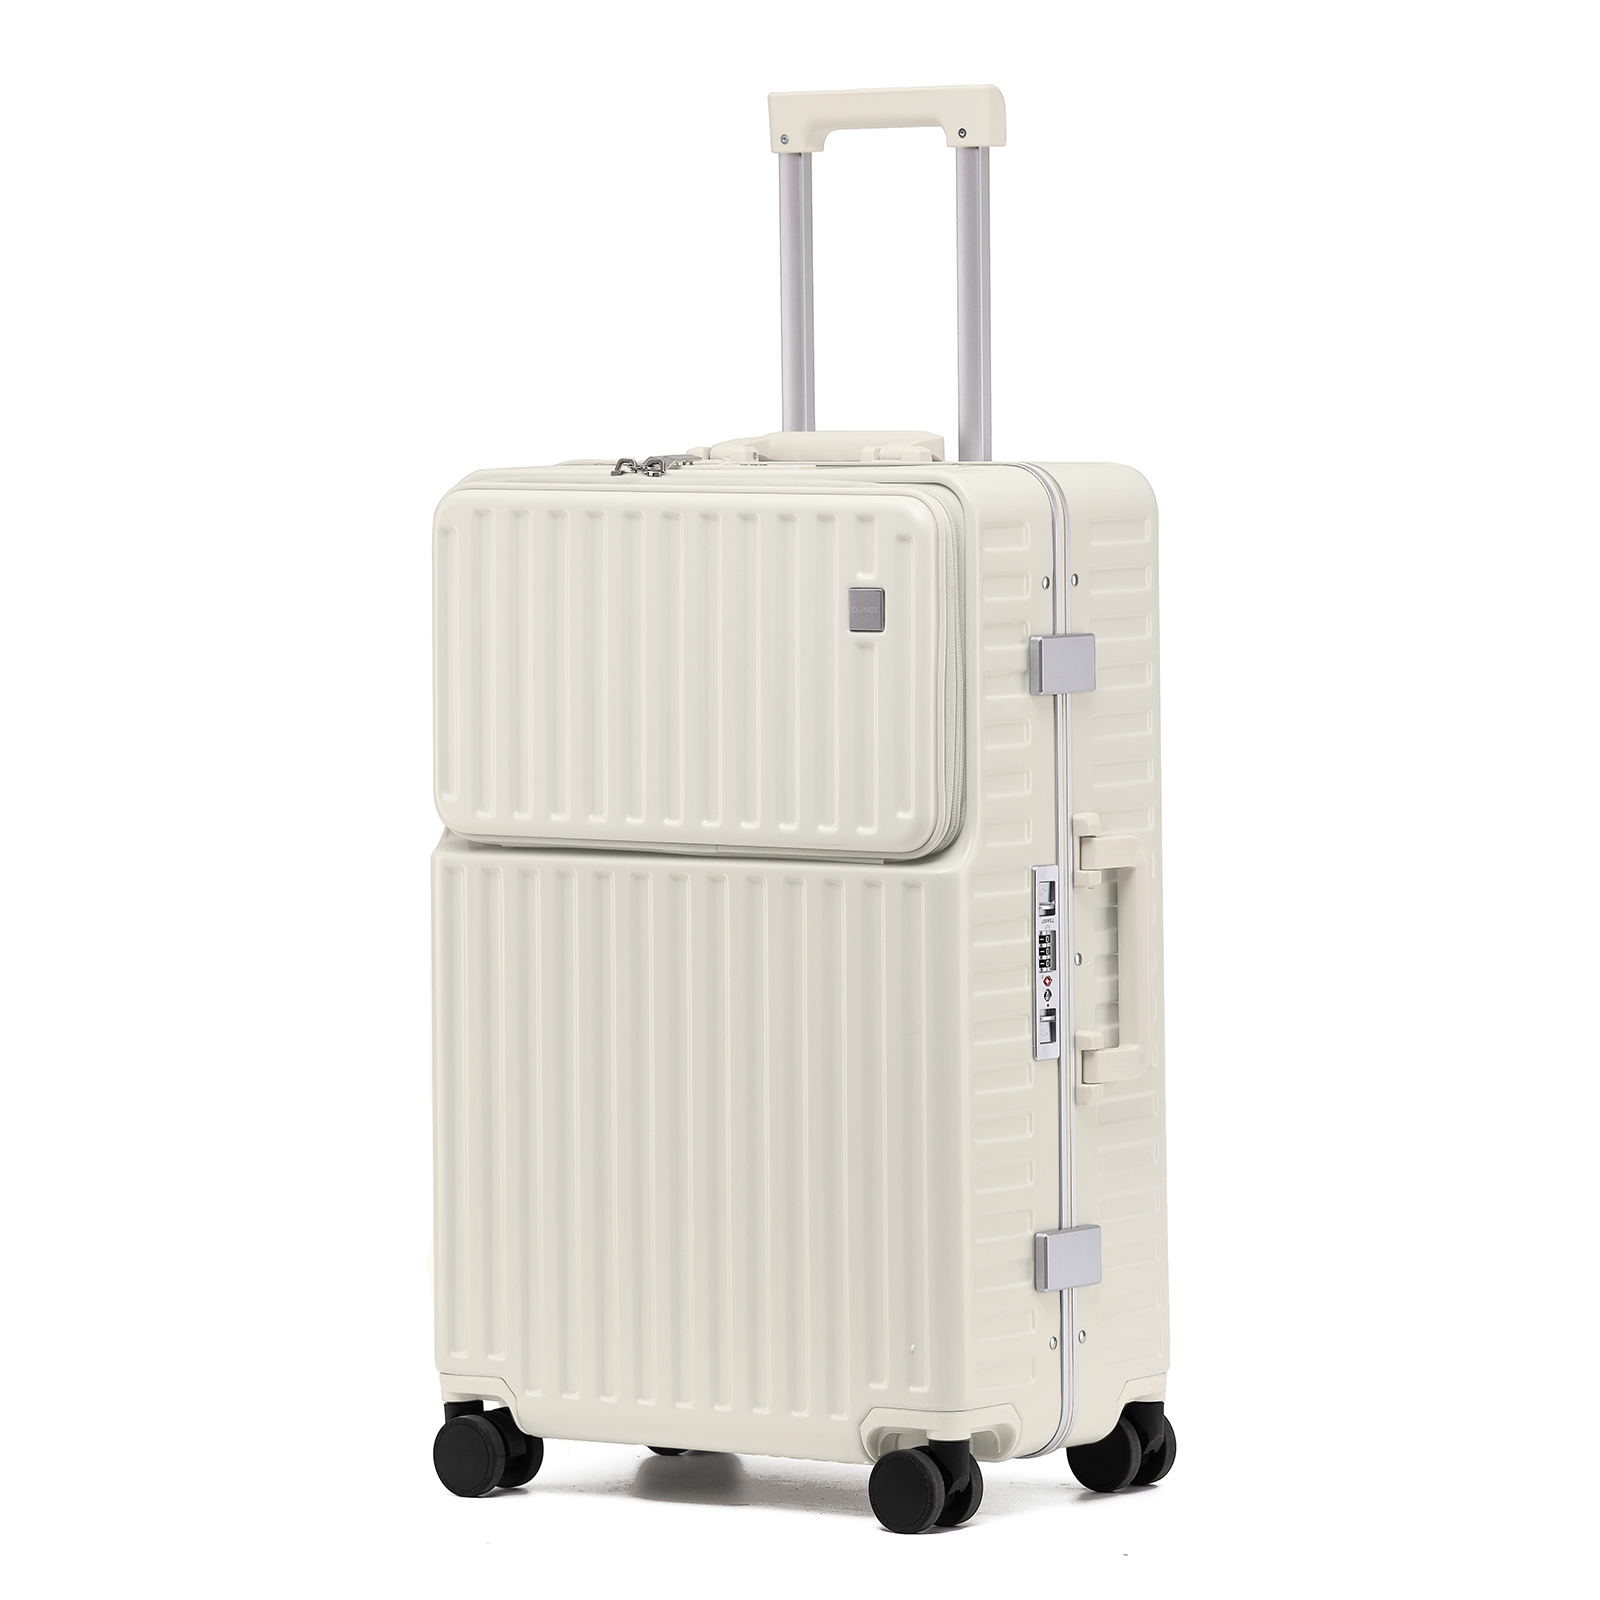 スーツケース 多機能 キャリーケース STYLISHJAPAN 公式 機内持ち込み アルミフレーム カップホルダー フロントポケット .OUNCE  mfsc2067s